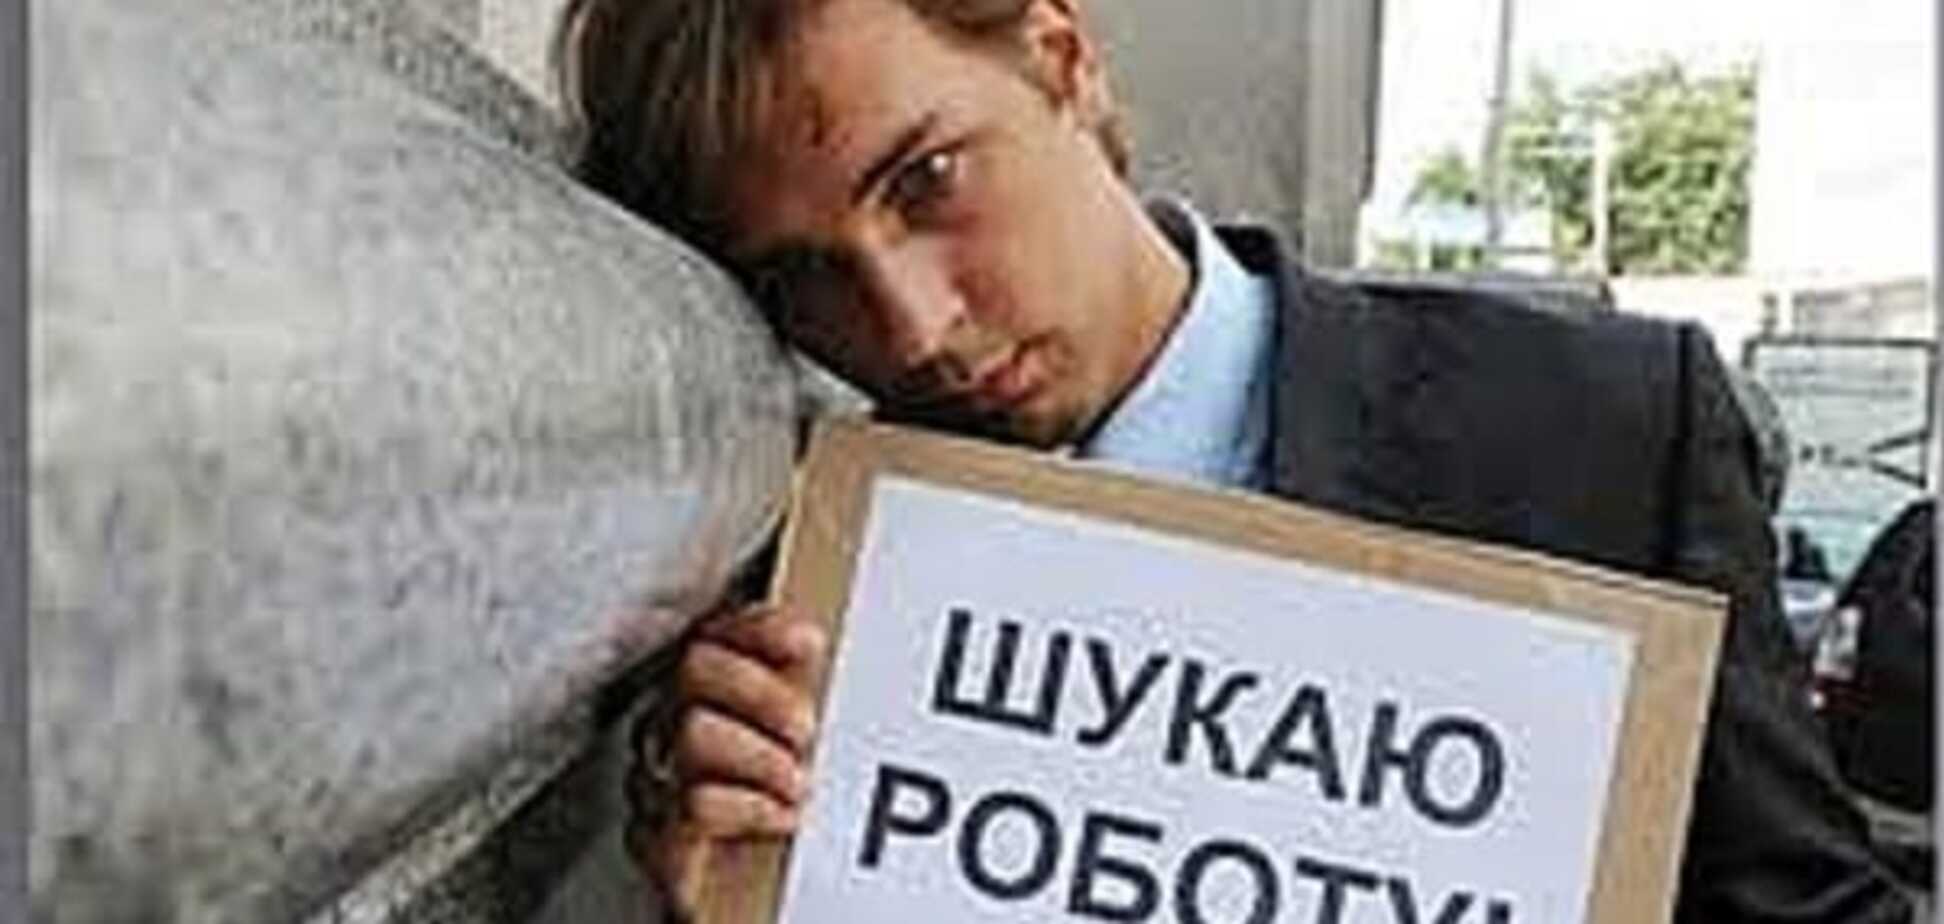 Подачка от Яценюка: сколько получают безработные в Украине